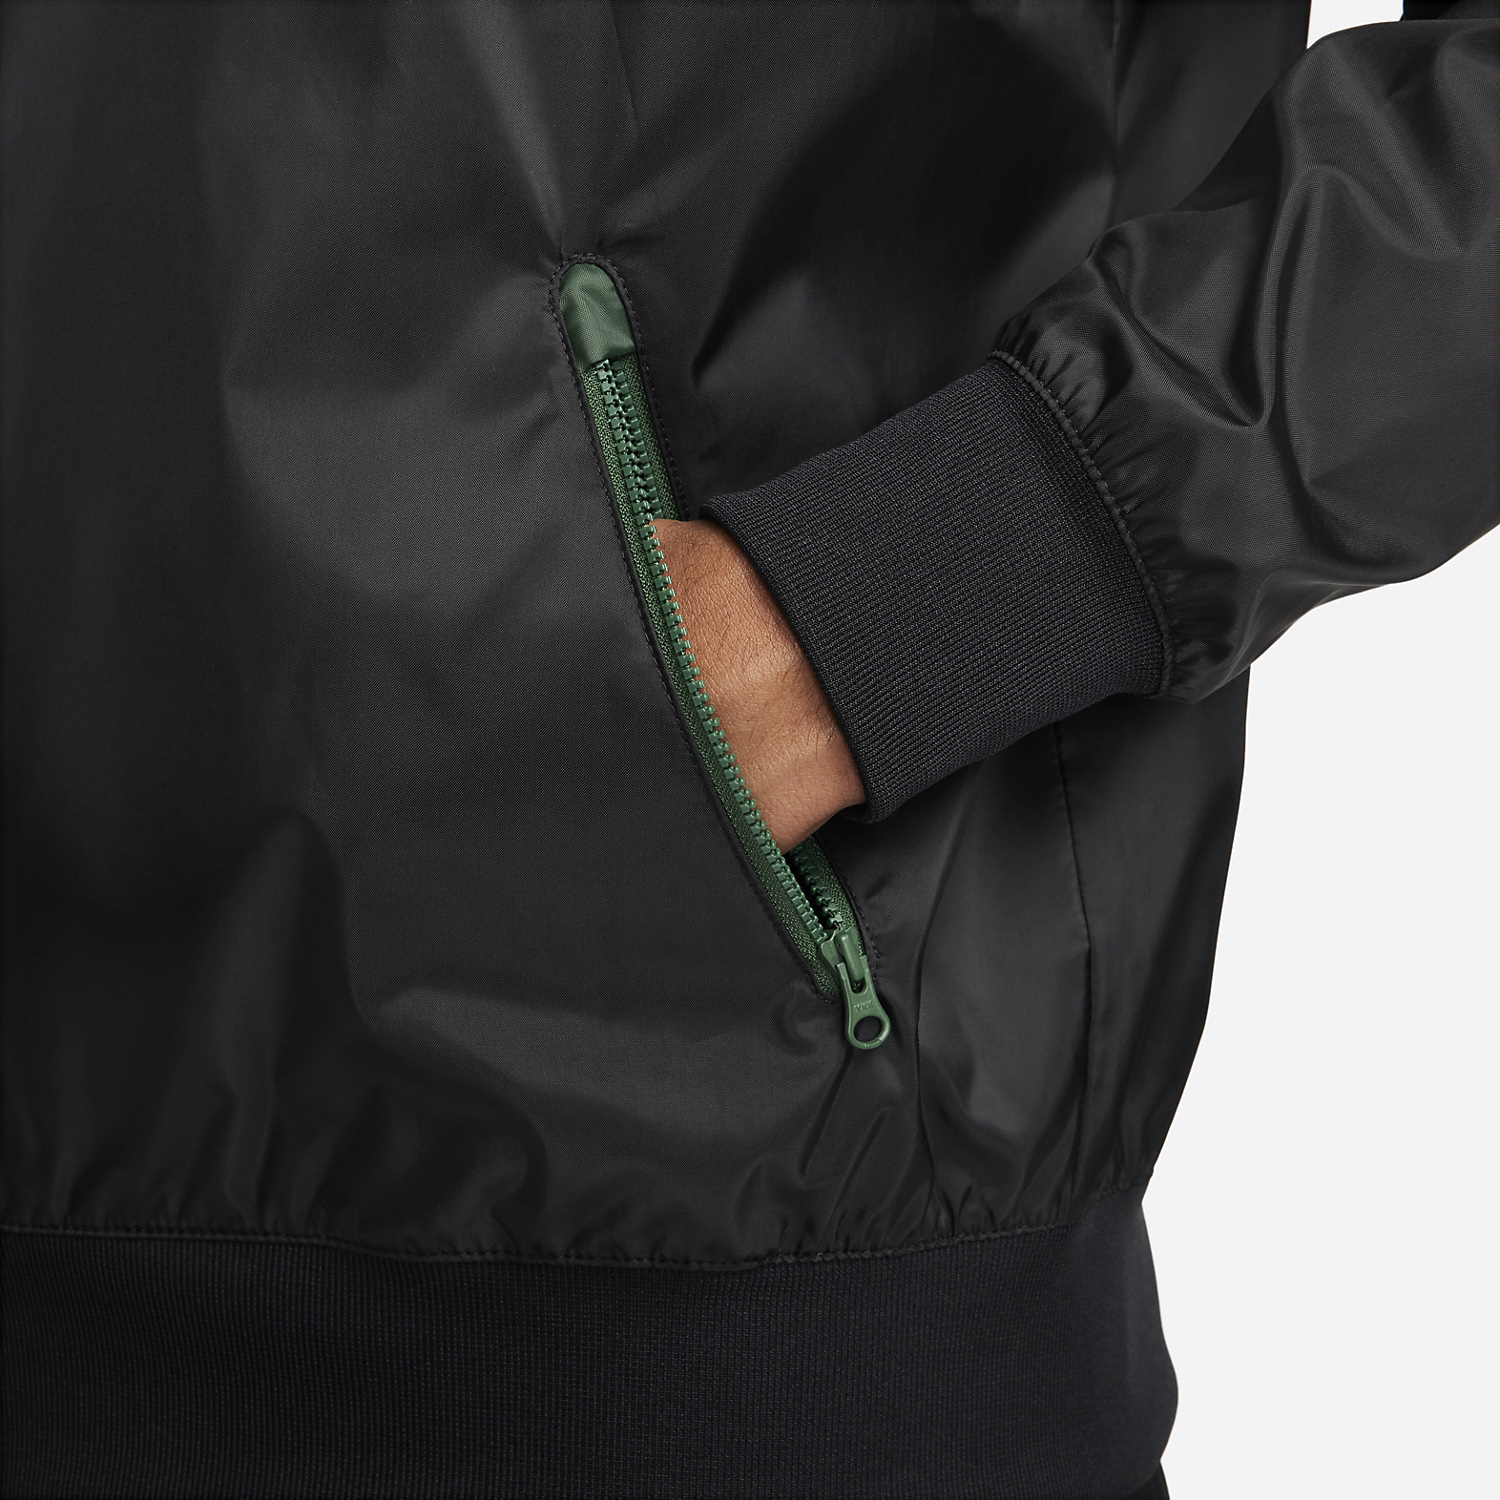 Nike Essentials Windrunner Men's Tennis Jacket   Black/Fir